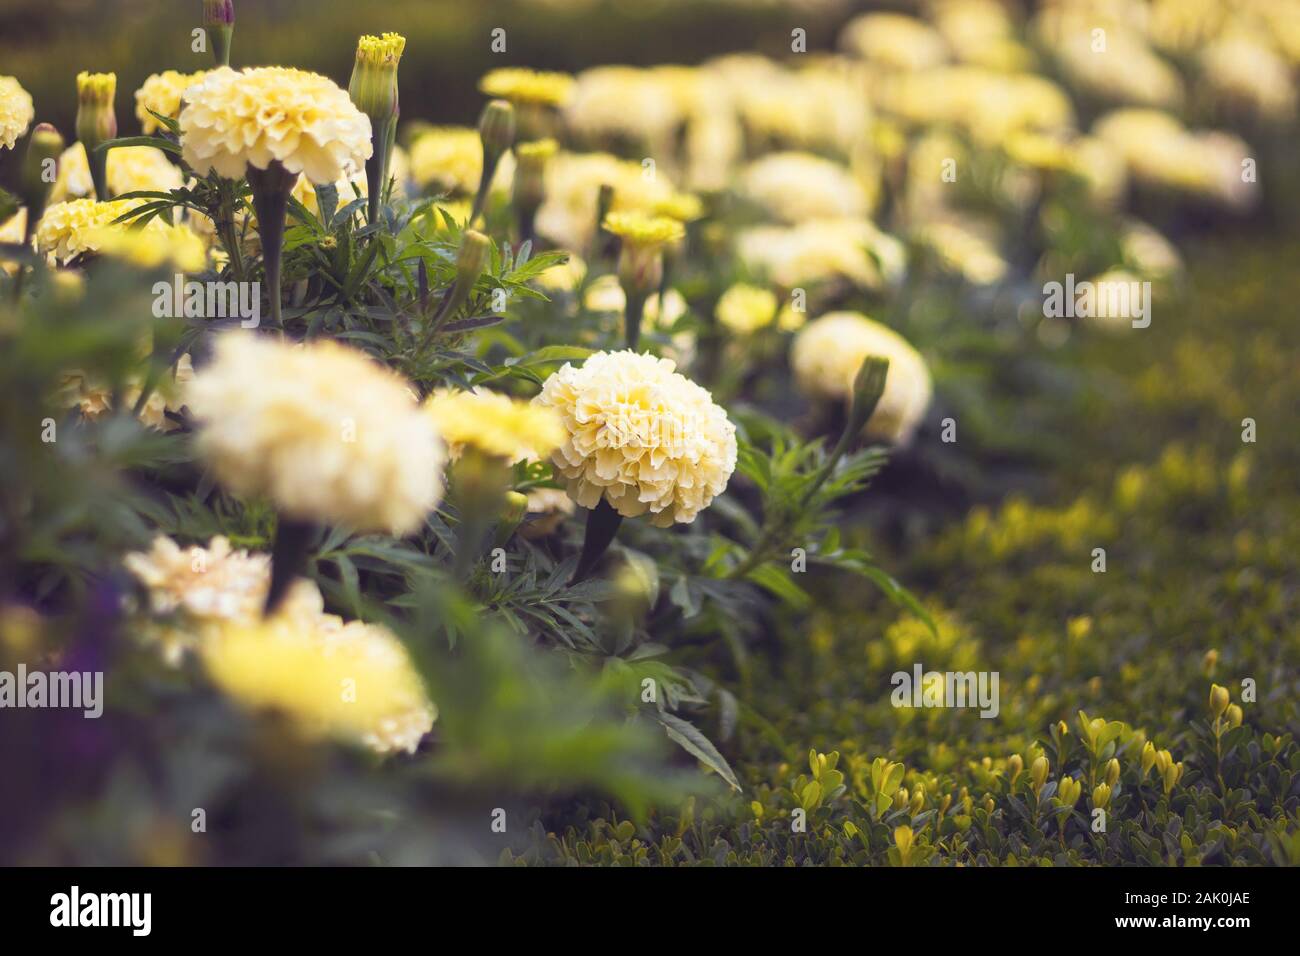 Tagetes patula, le marigot français - fleurs jaune clair dans le lit de fleurs Banque D'Images